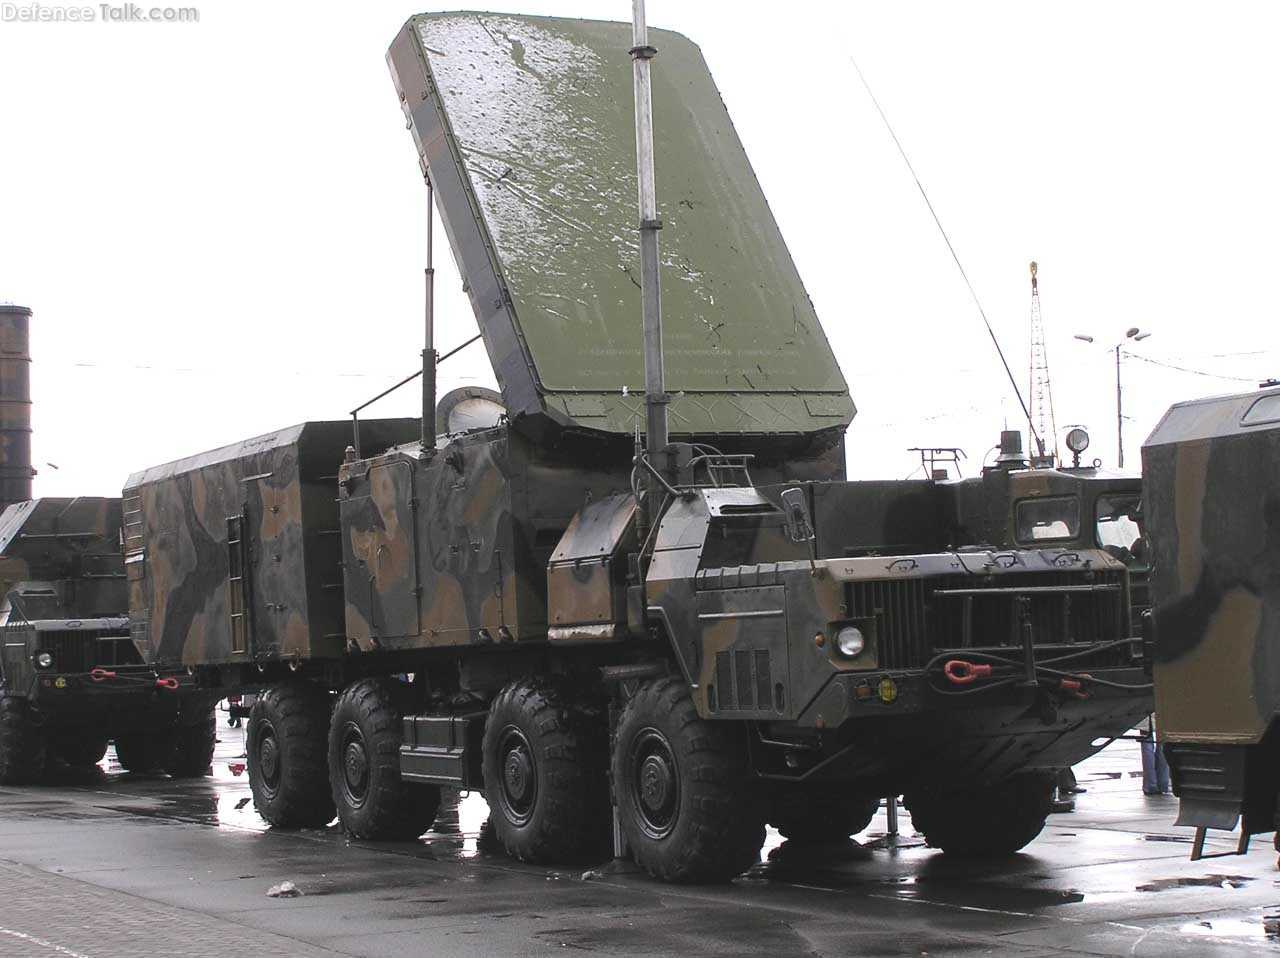 S-300PS targetting radar